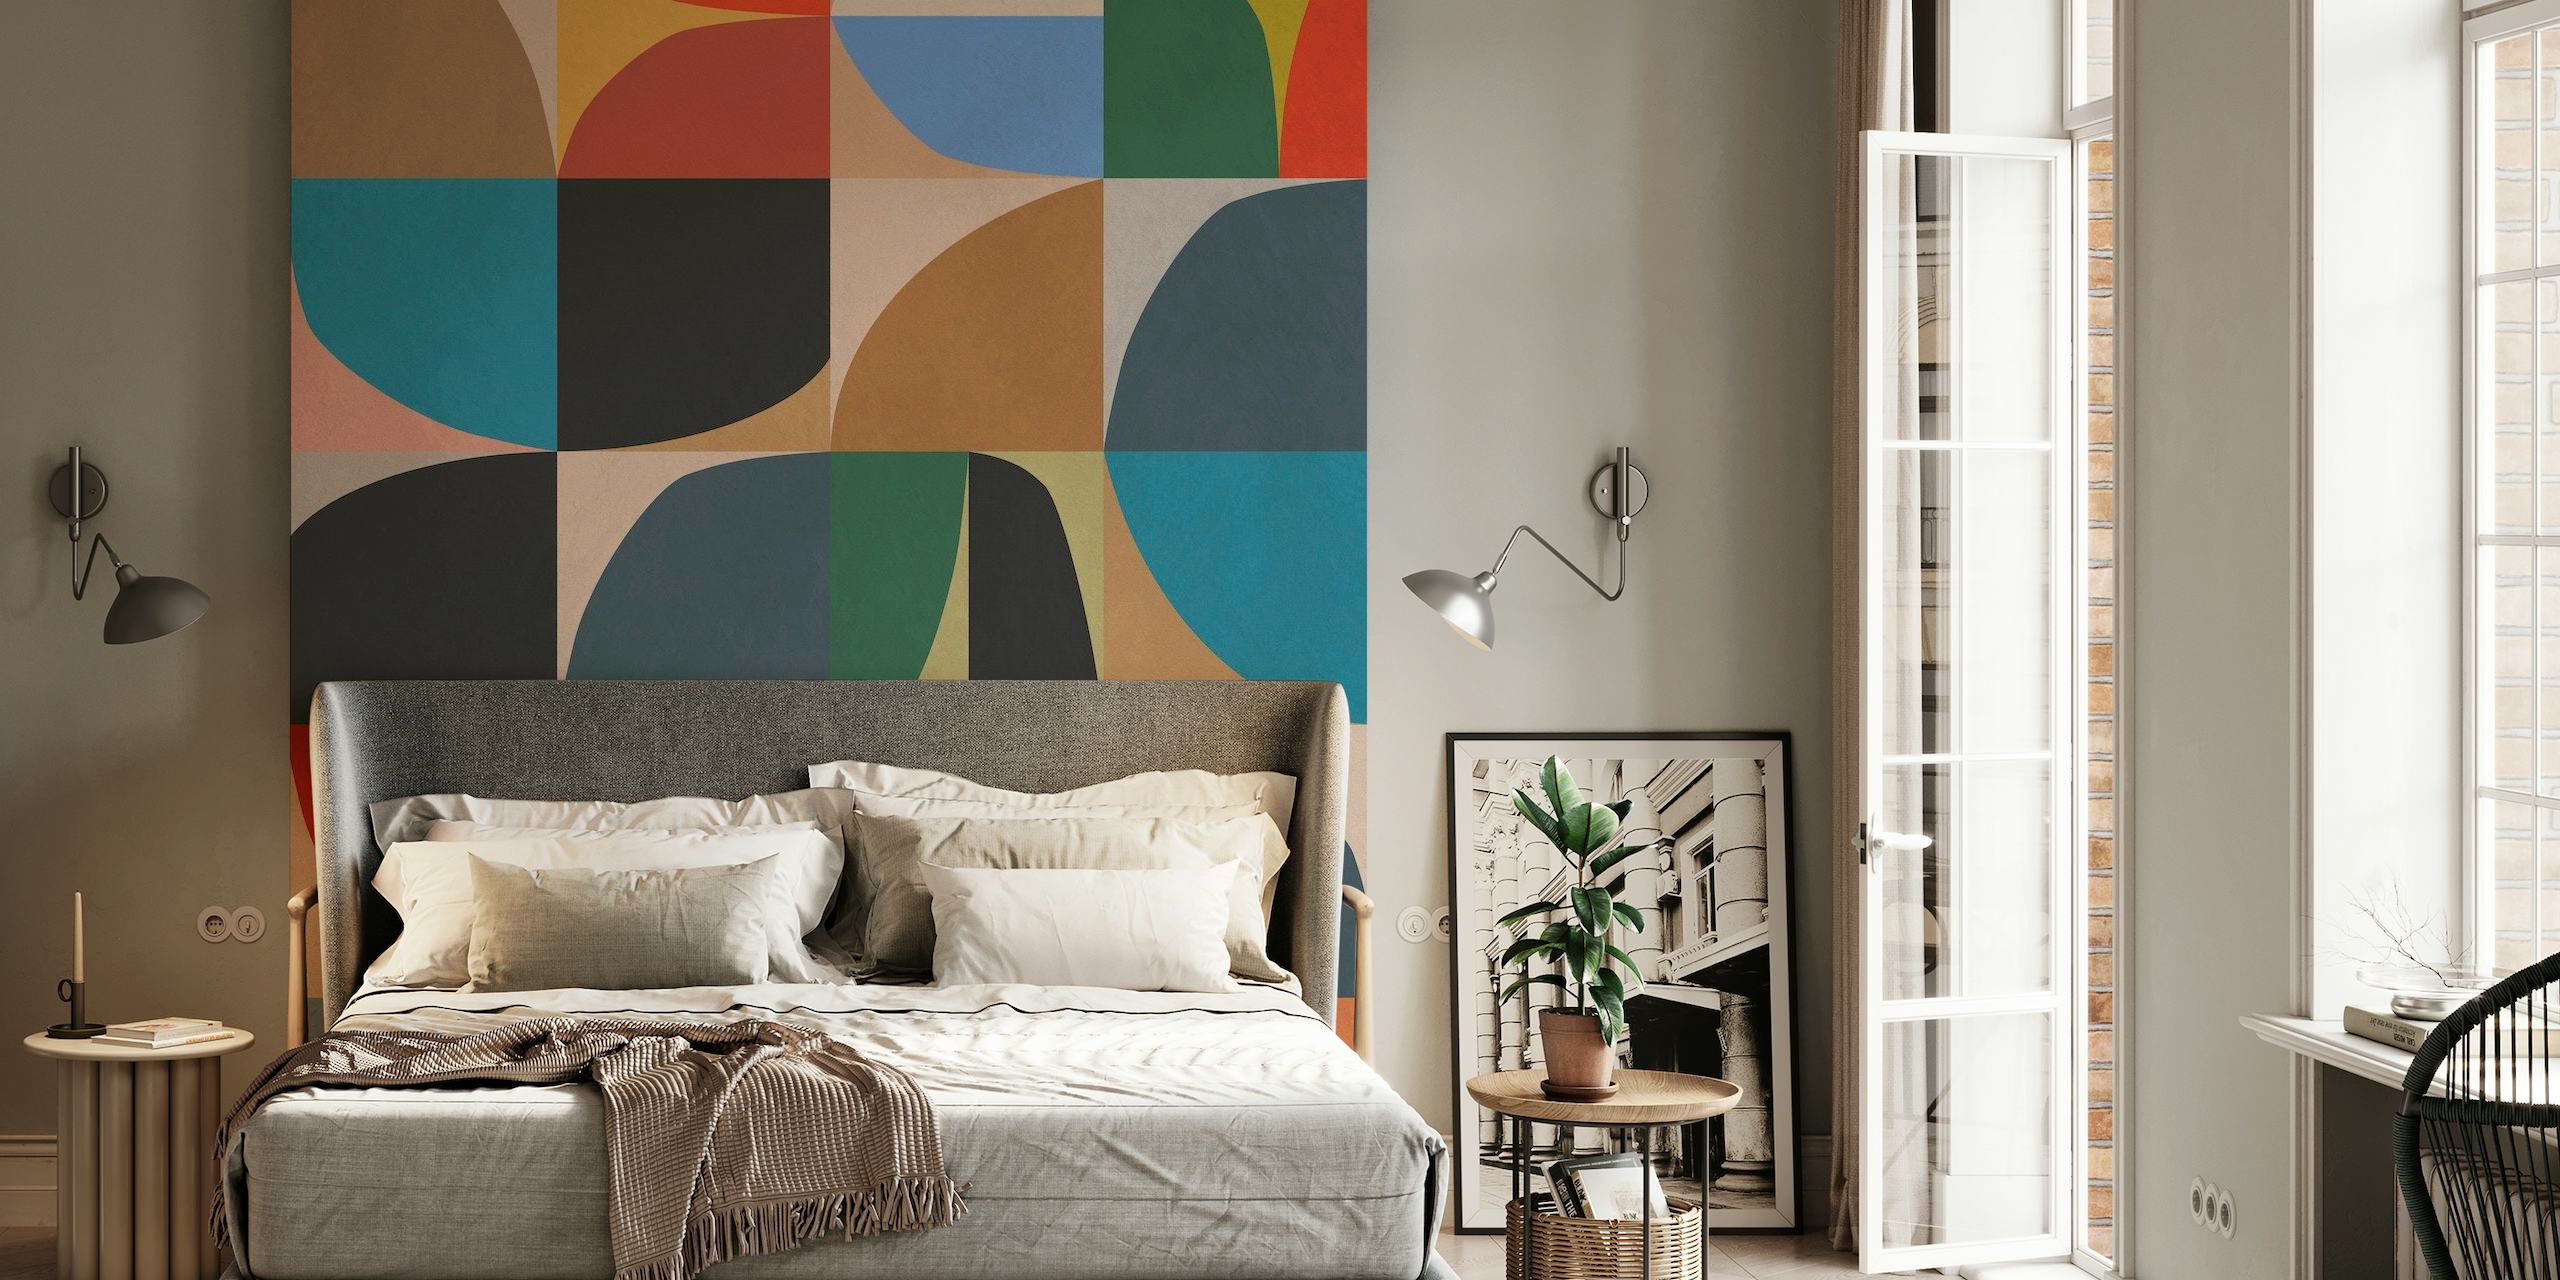 Geometrinen abstrakti seinämaalaus, jossa on värikkäitä muotoja punaisen, sinisen, vihreän ja sinapin sävyissä